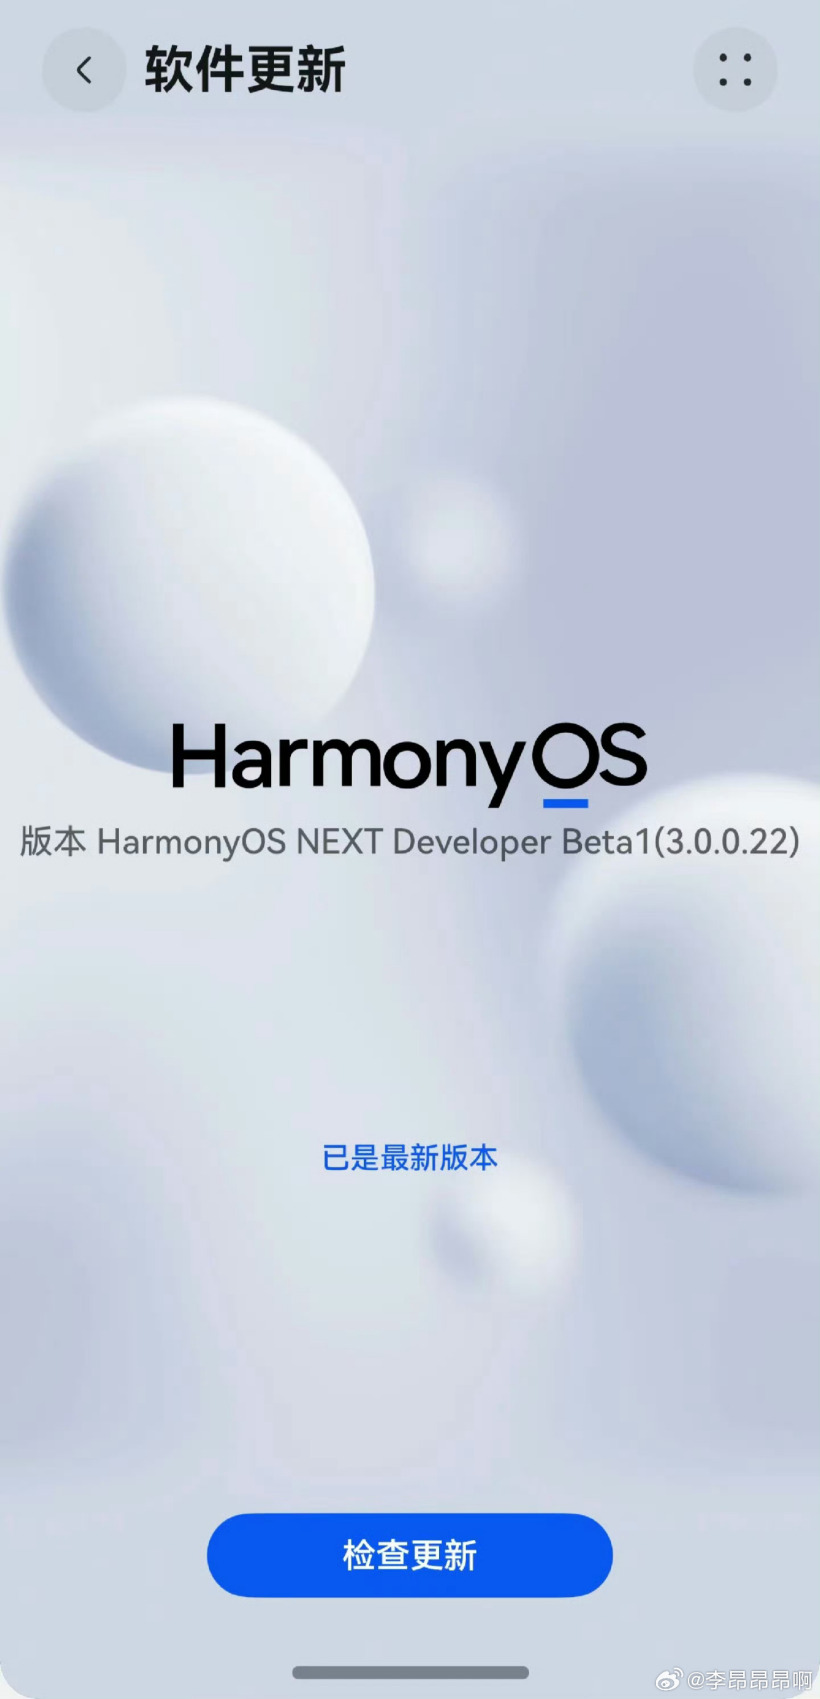 博主展示鸿蒙harmonyos next系统截图,6月21日华为开发者大会 hdc